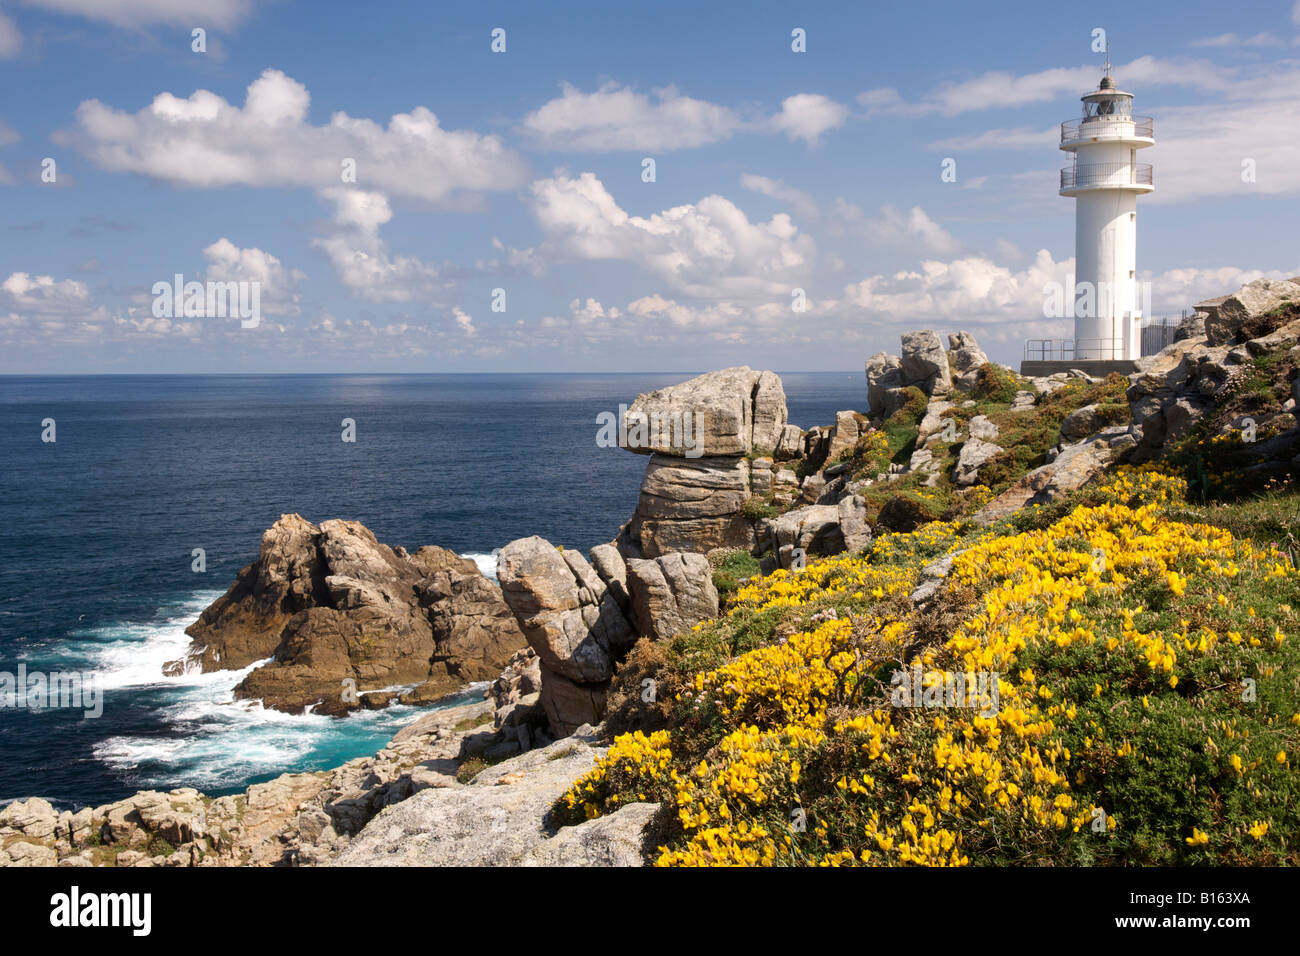 El faro de Cabo Touriñan en la costa atlántica de la provincia de A Coruña Galicia España. Foto de stock